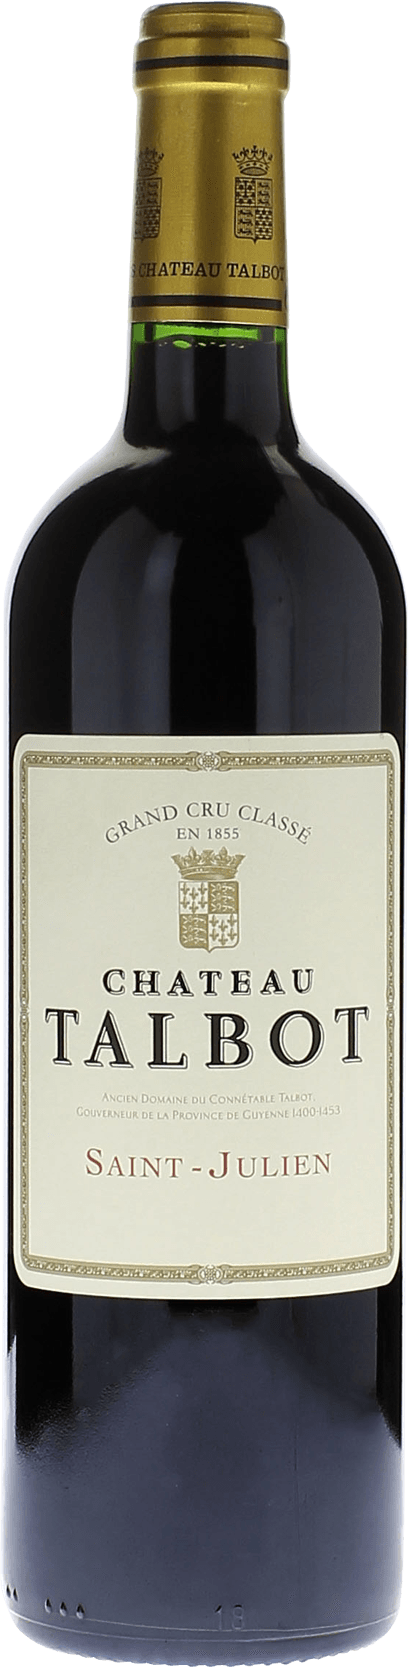 Talbot 2013 4me Grand cru class Saint-Julien, Bordeaux rouge